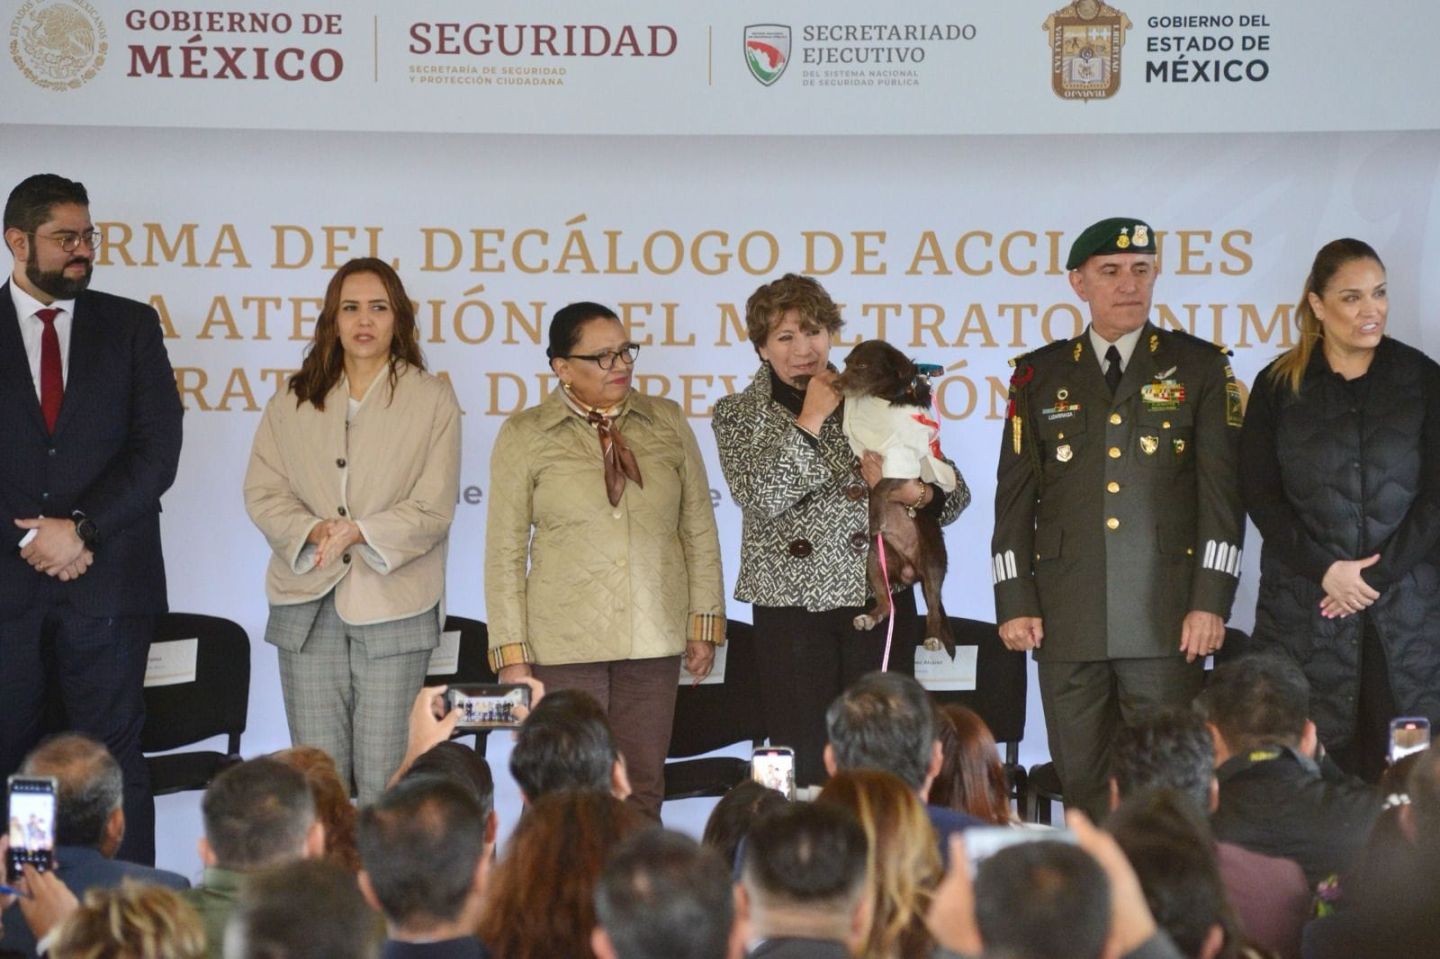 Incorpora la Gobernadora Delfina Gómez la Prevención
del Maltrato Animal a la Política de Seguridad Estatal
 